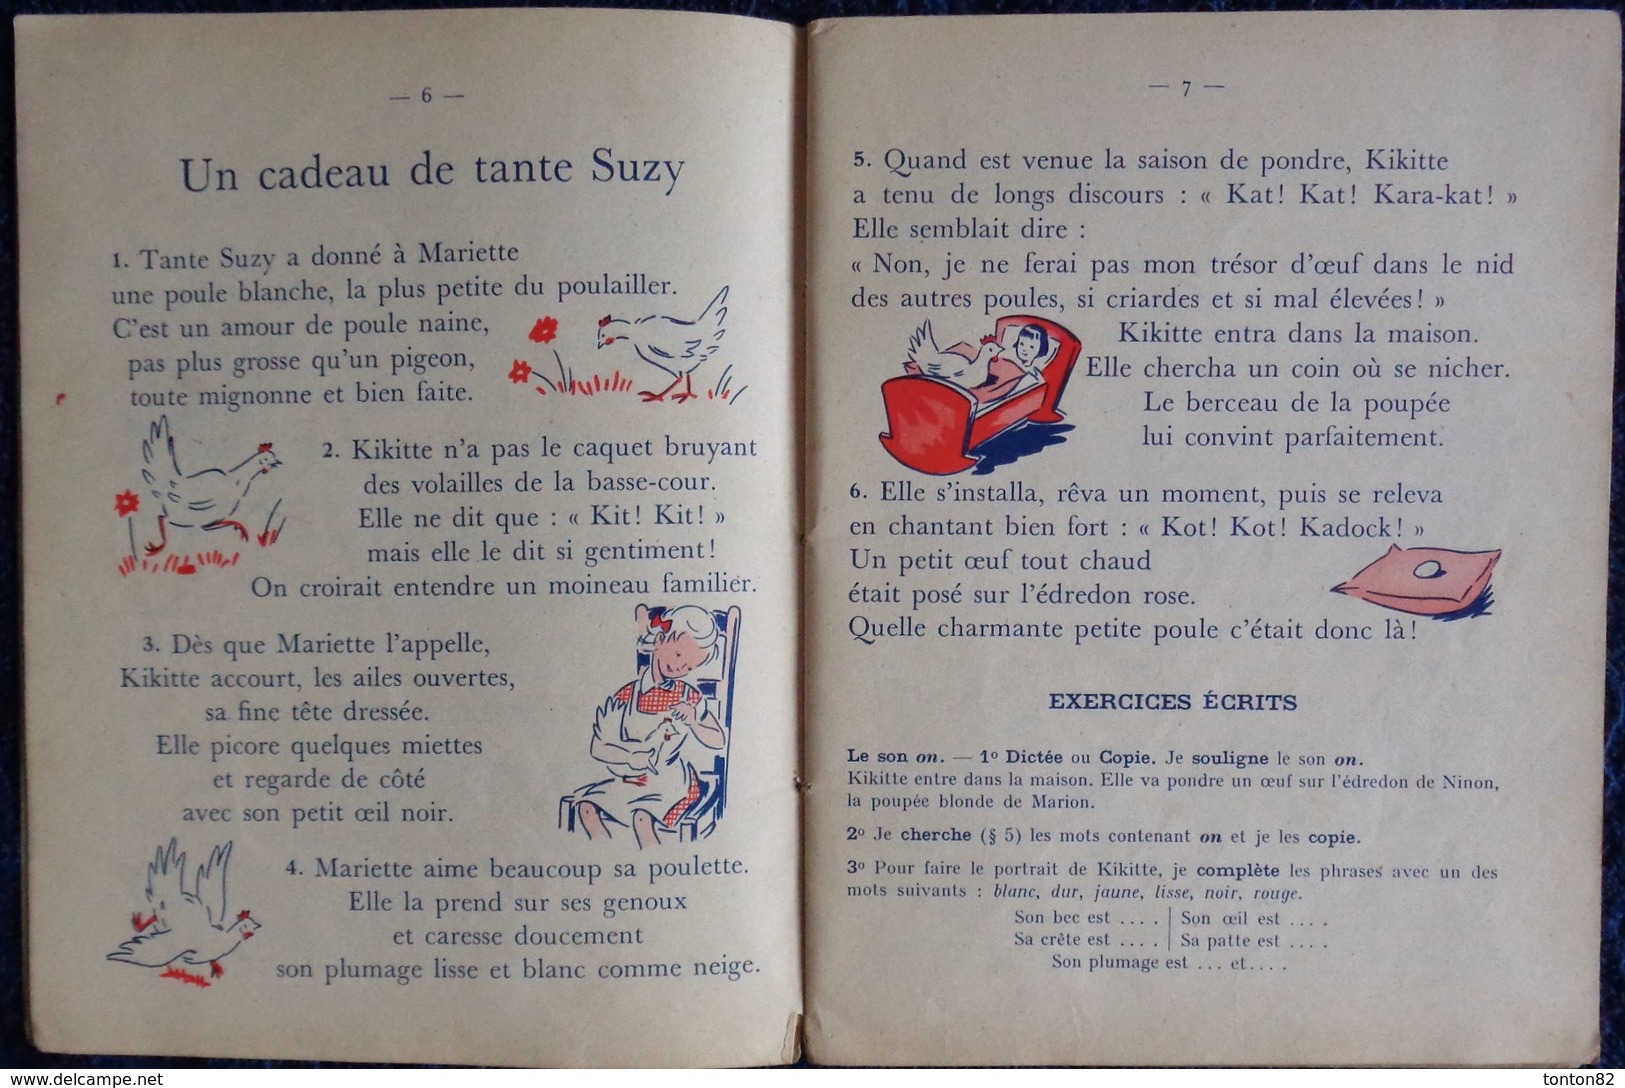 Mme Picard - Mlle B. Jughon - Printemps Au Moulin Bleu - 1er Livre De Lecture Courante - Librairie Armand Colin - (1951) - 6-12 Ans